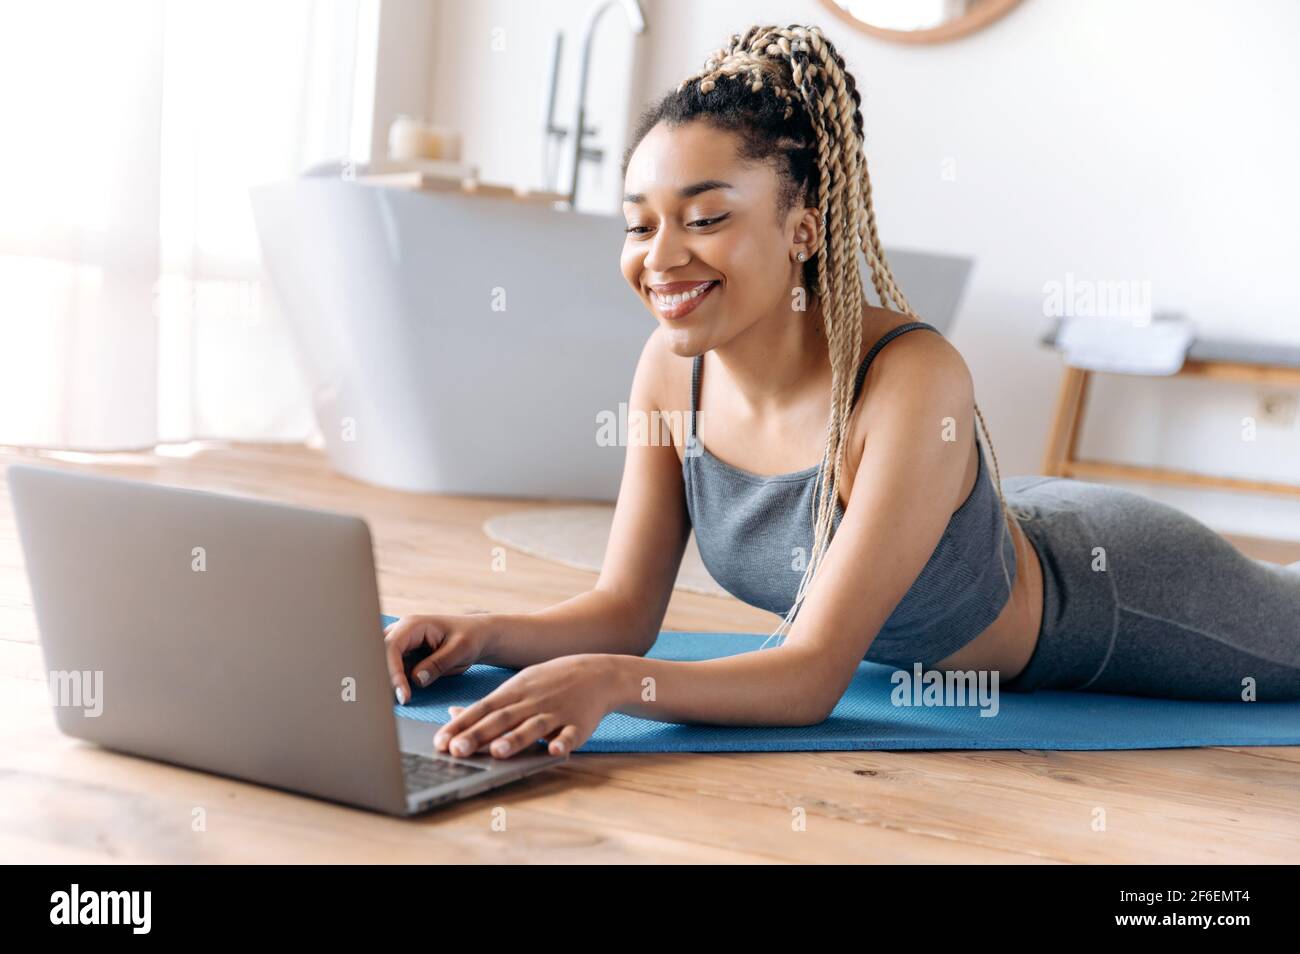 Athlétique belle jeune femme afro-américaine avec une bonne figure, se trouve sur le sol à la maison, montres en ligne cours de fitness utilise ordinateur portable, va dans pour le sport, mène un style de vie sain, sourire Banque D'Images